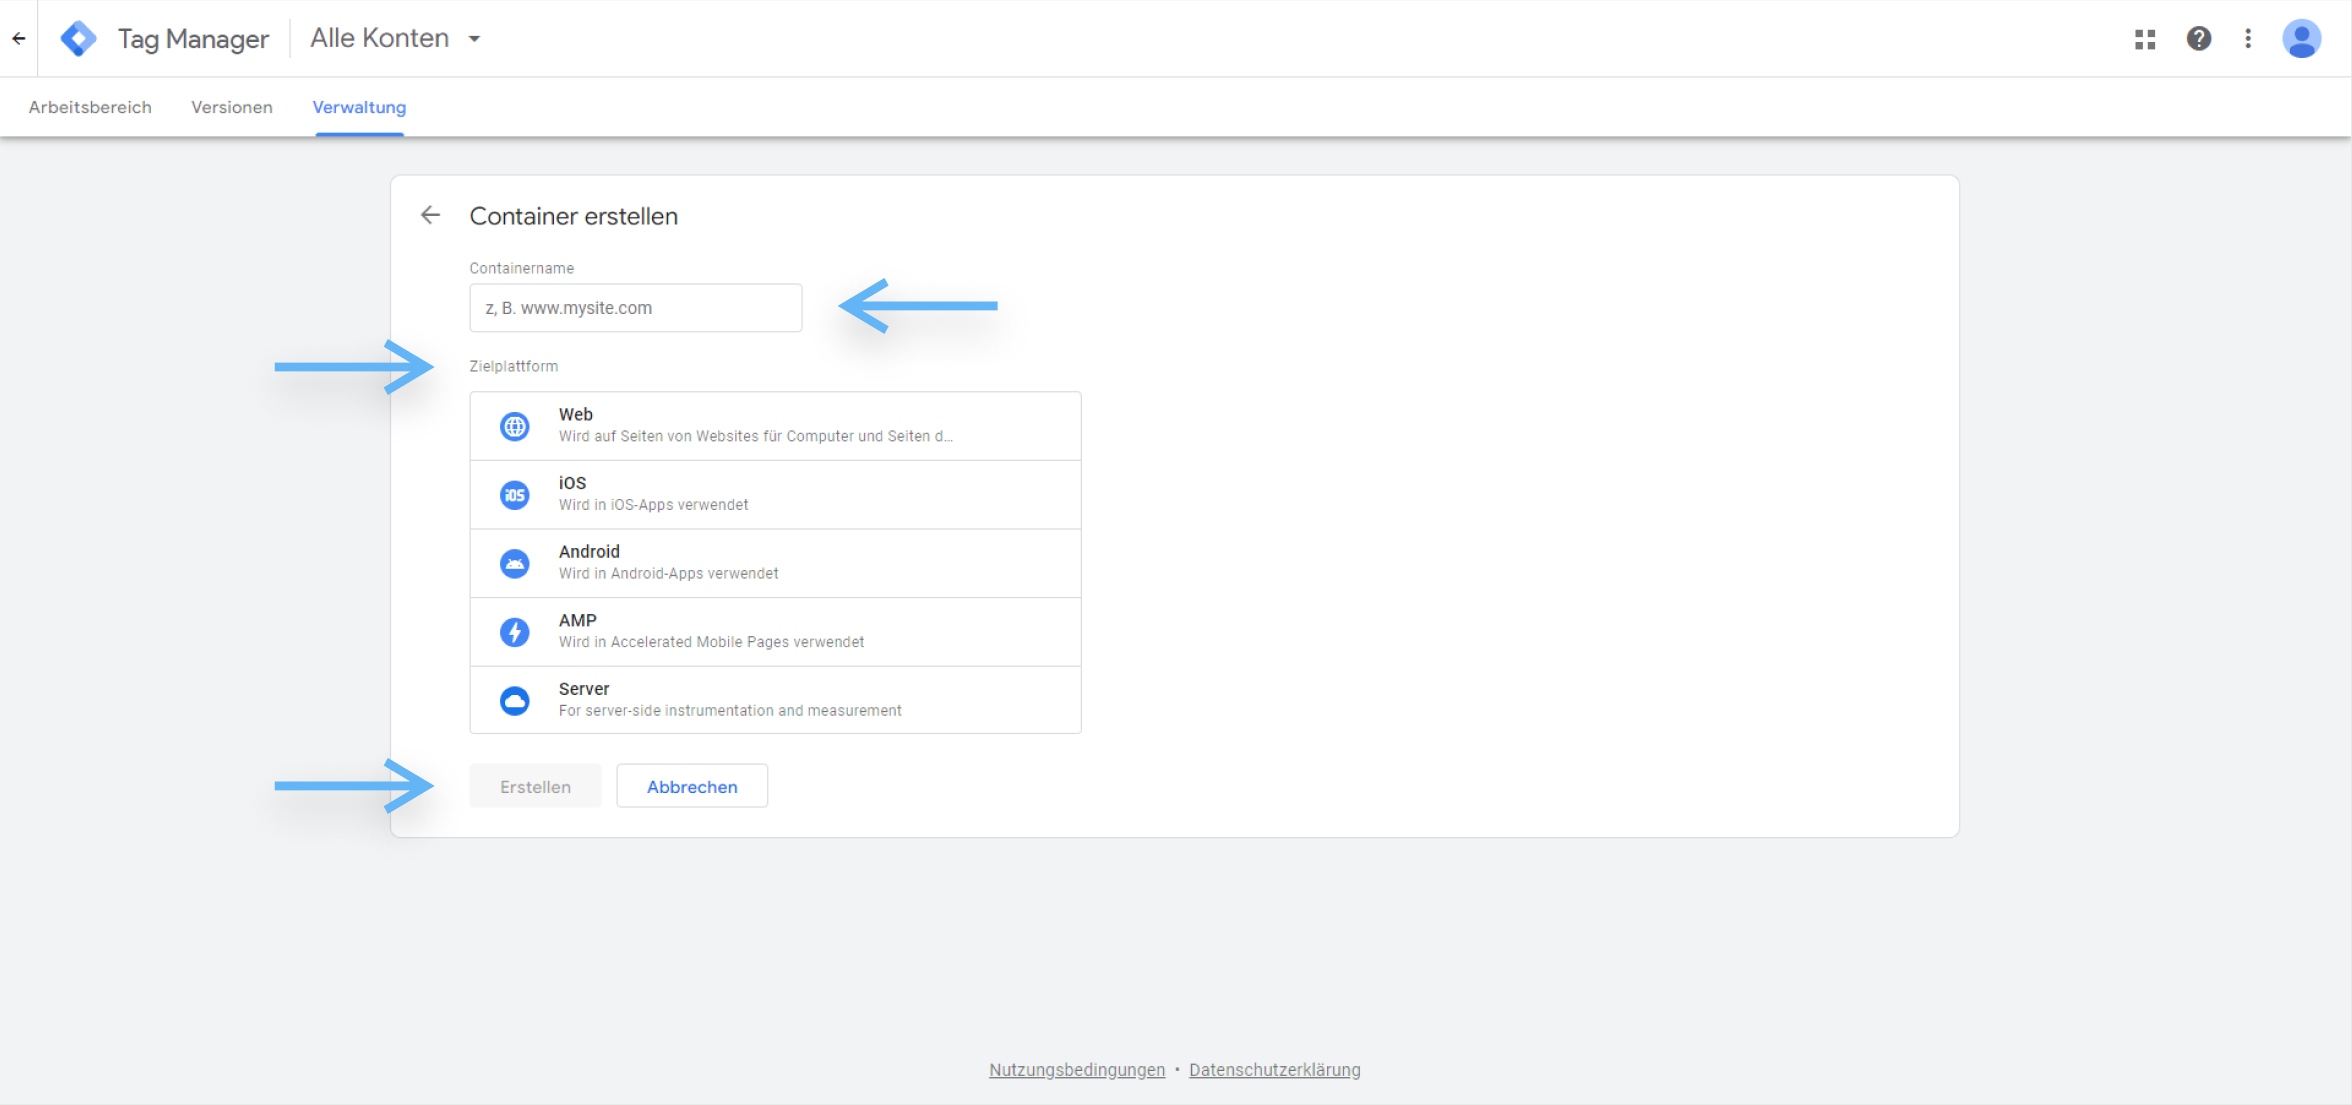 atrava - Google Tag Manager Anleitung - Containername vergeben und Zielplatform auswählen